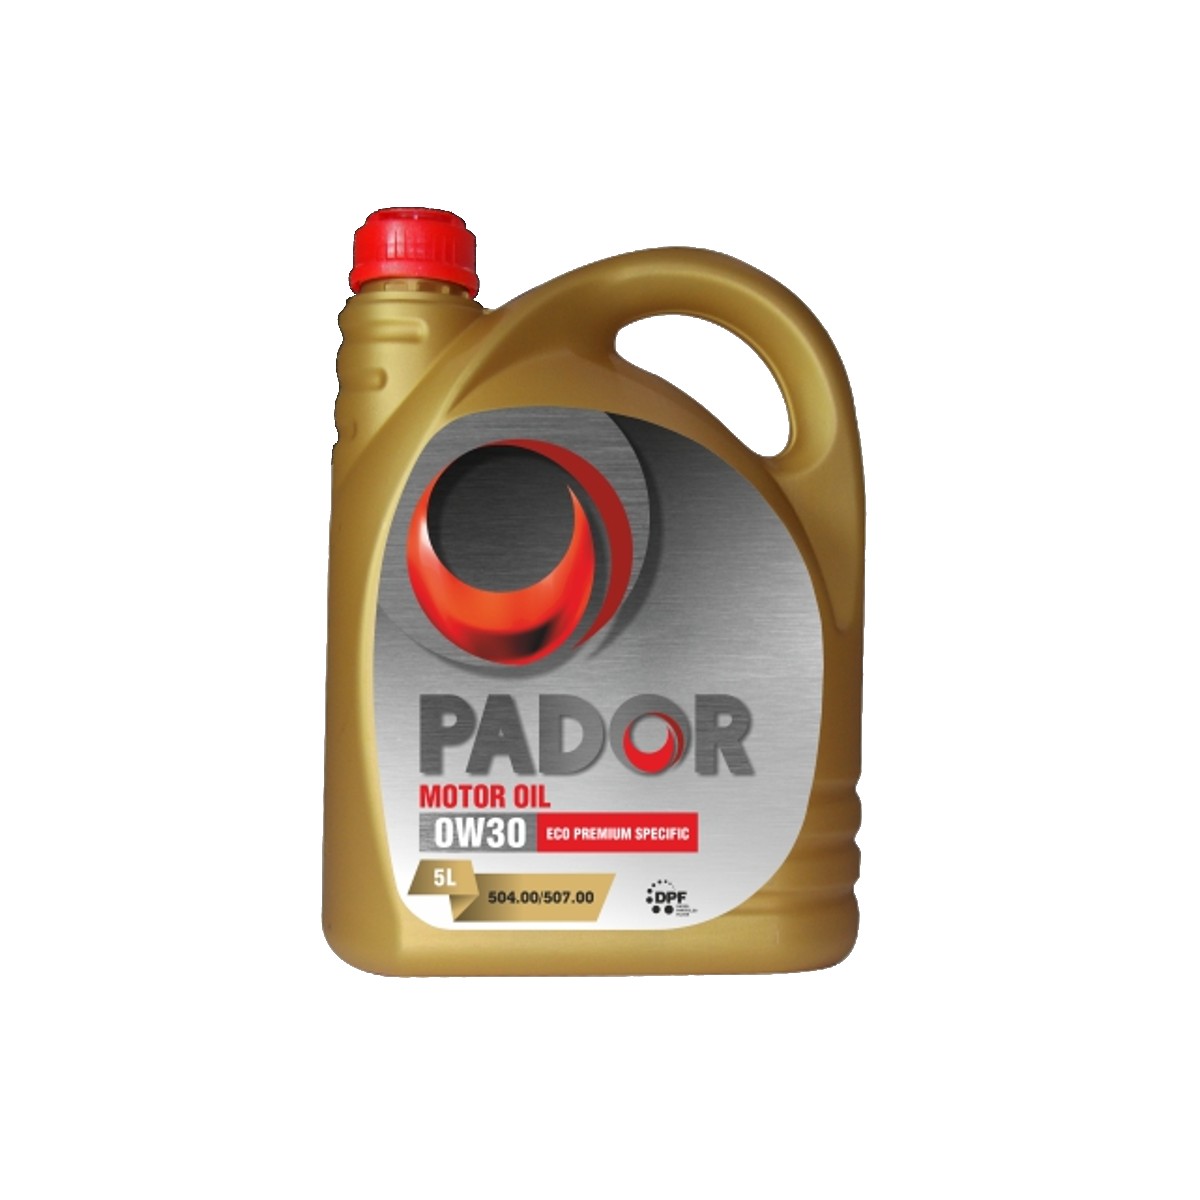 Motor Oil Pador 0W30 Eco Premium Specific 504.00/507.00 5L  